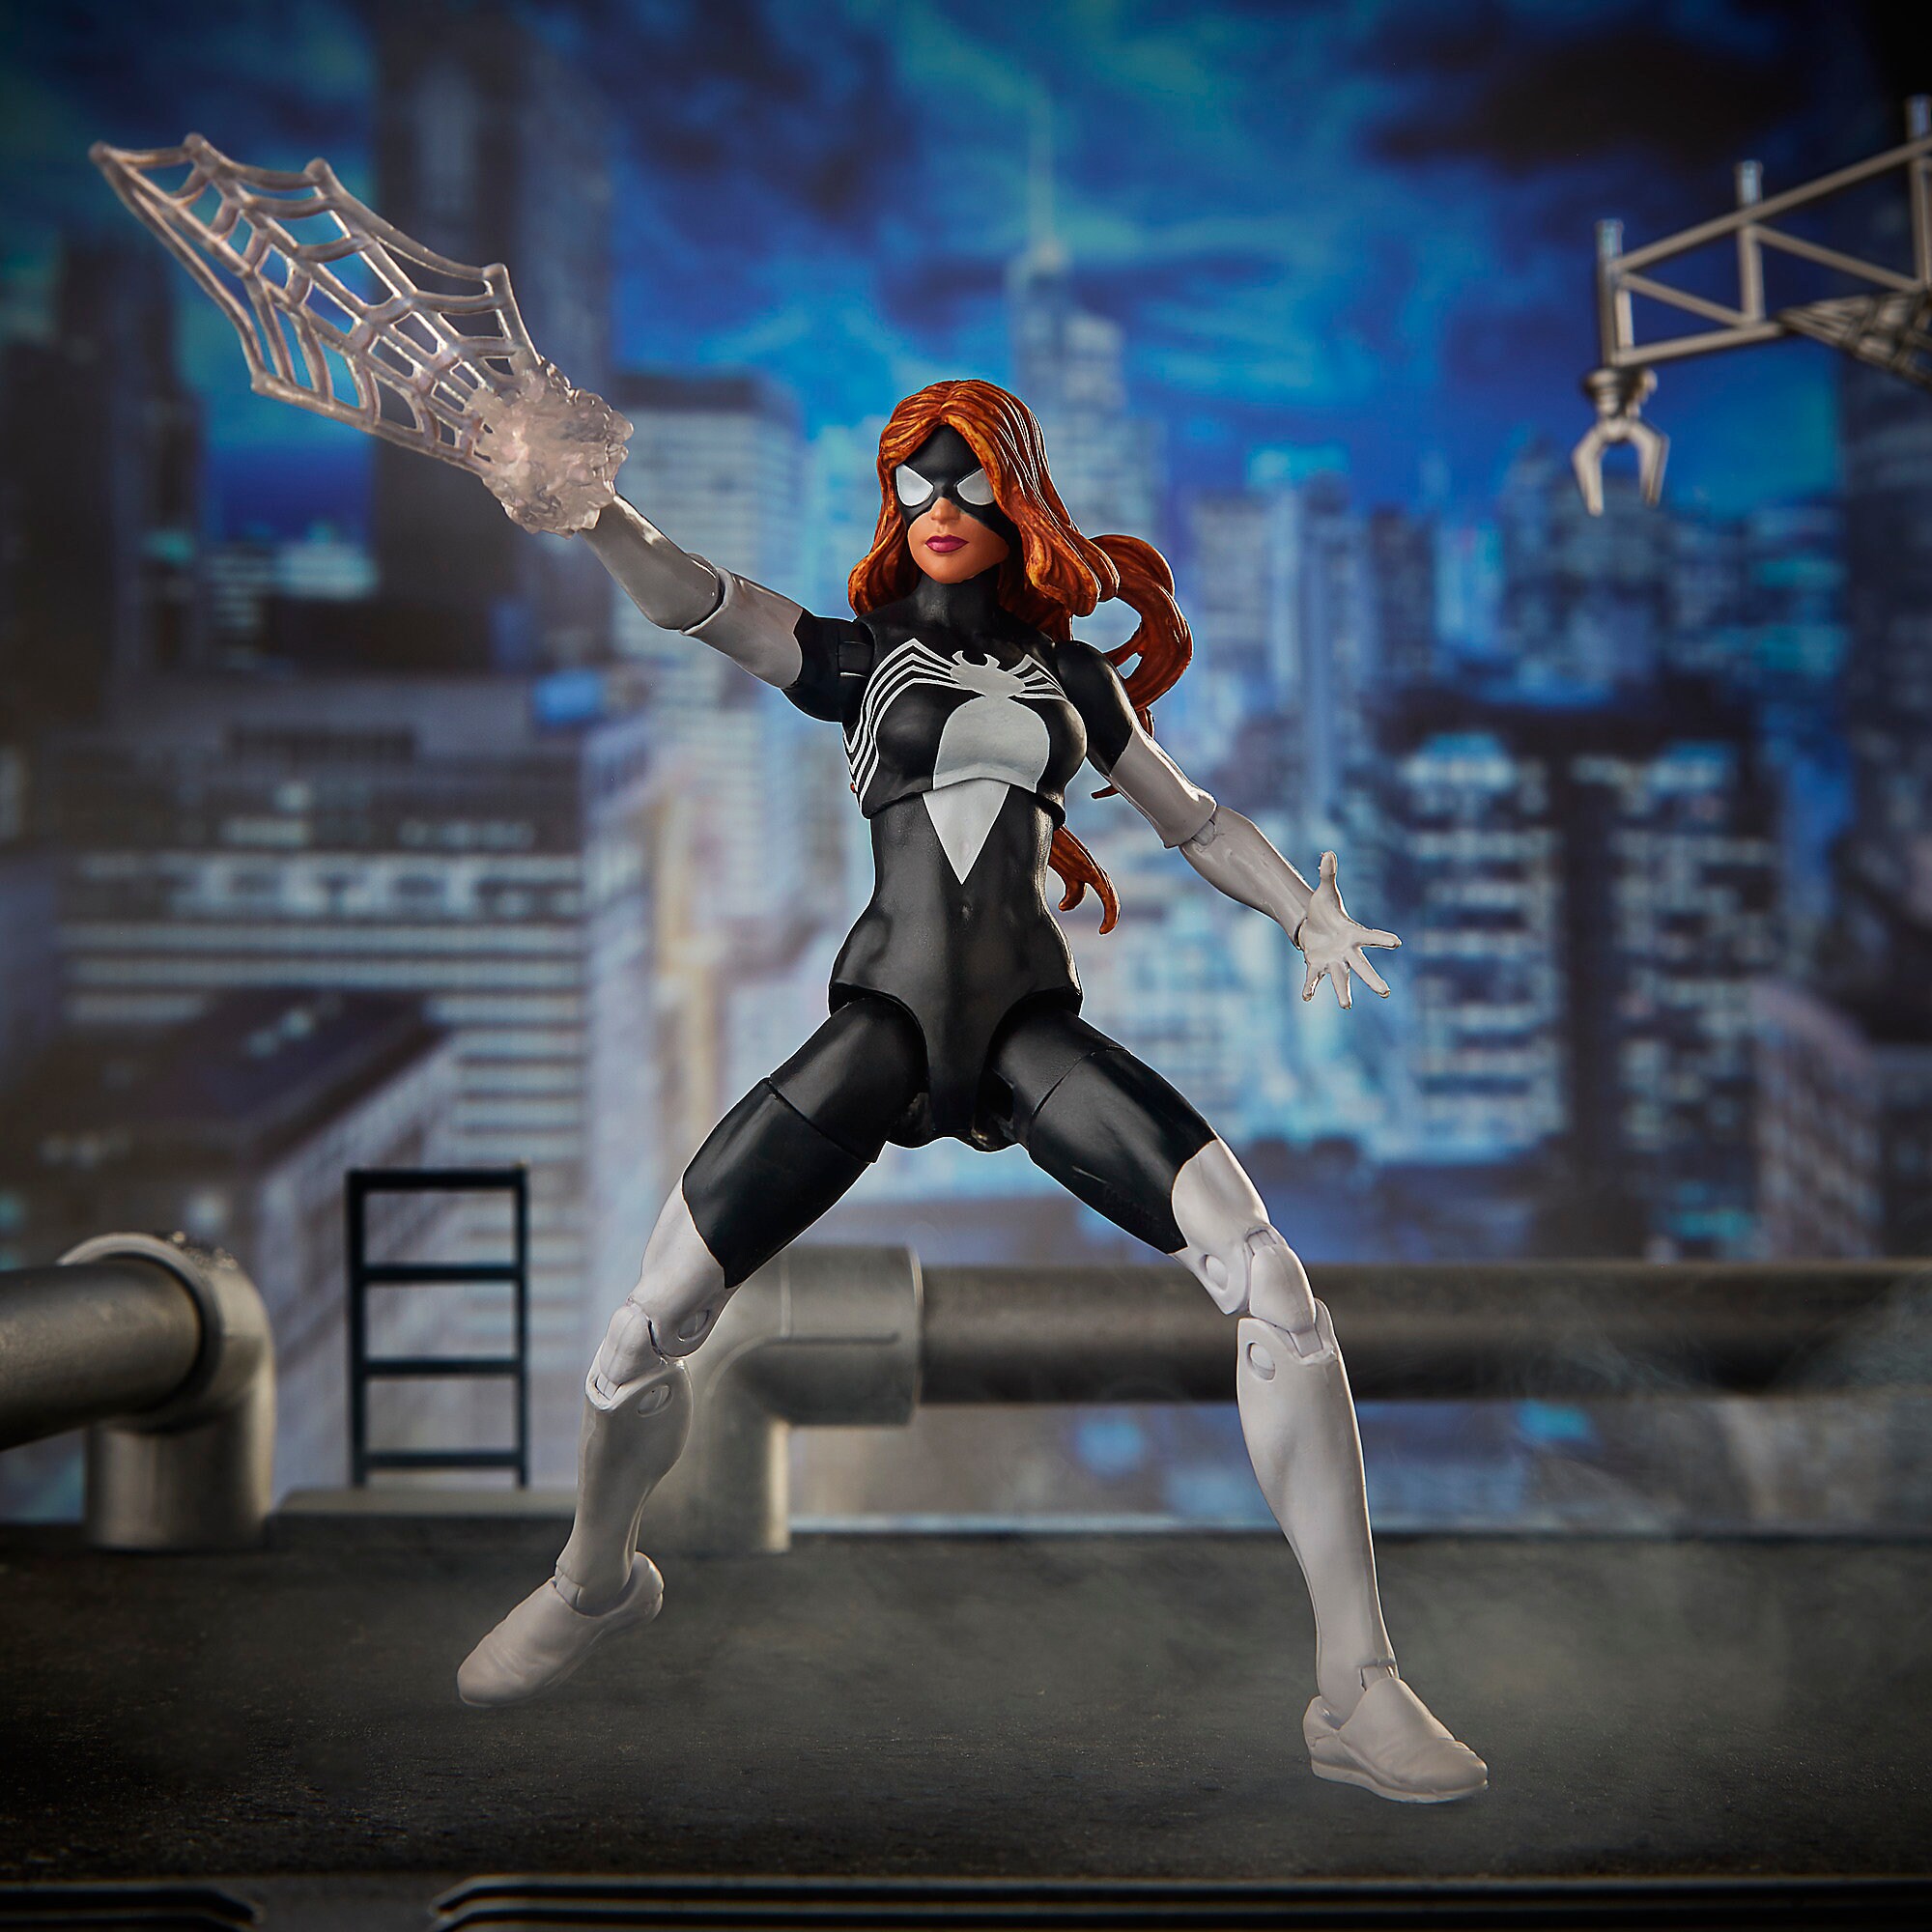 Spider-Woman Action Figure - Spider-Man Legends Series